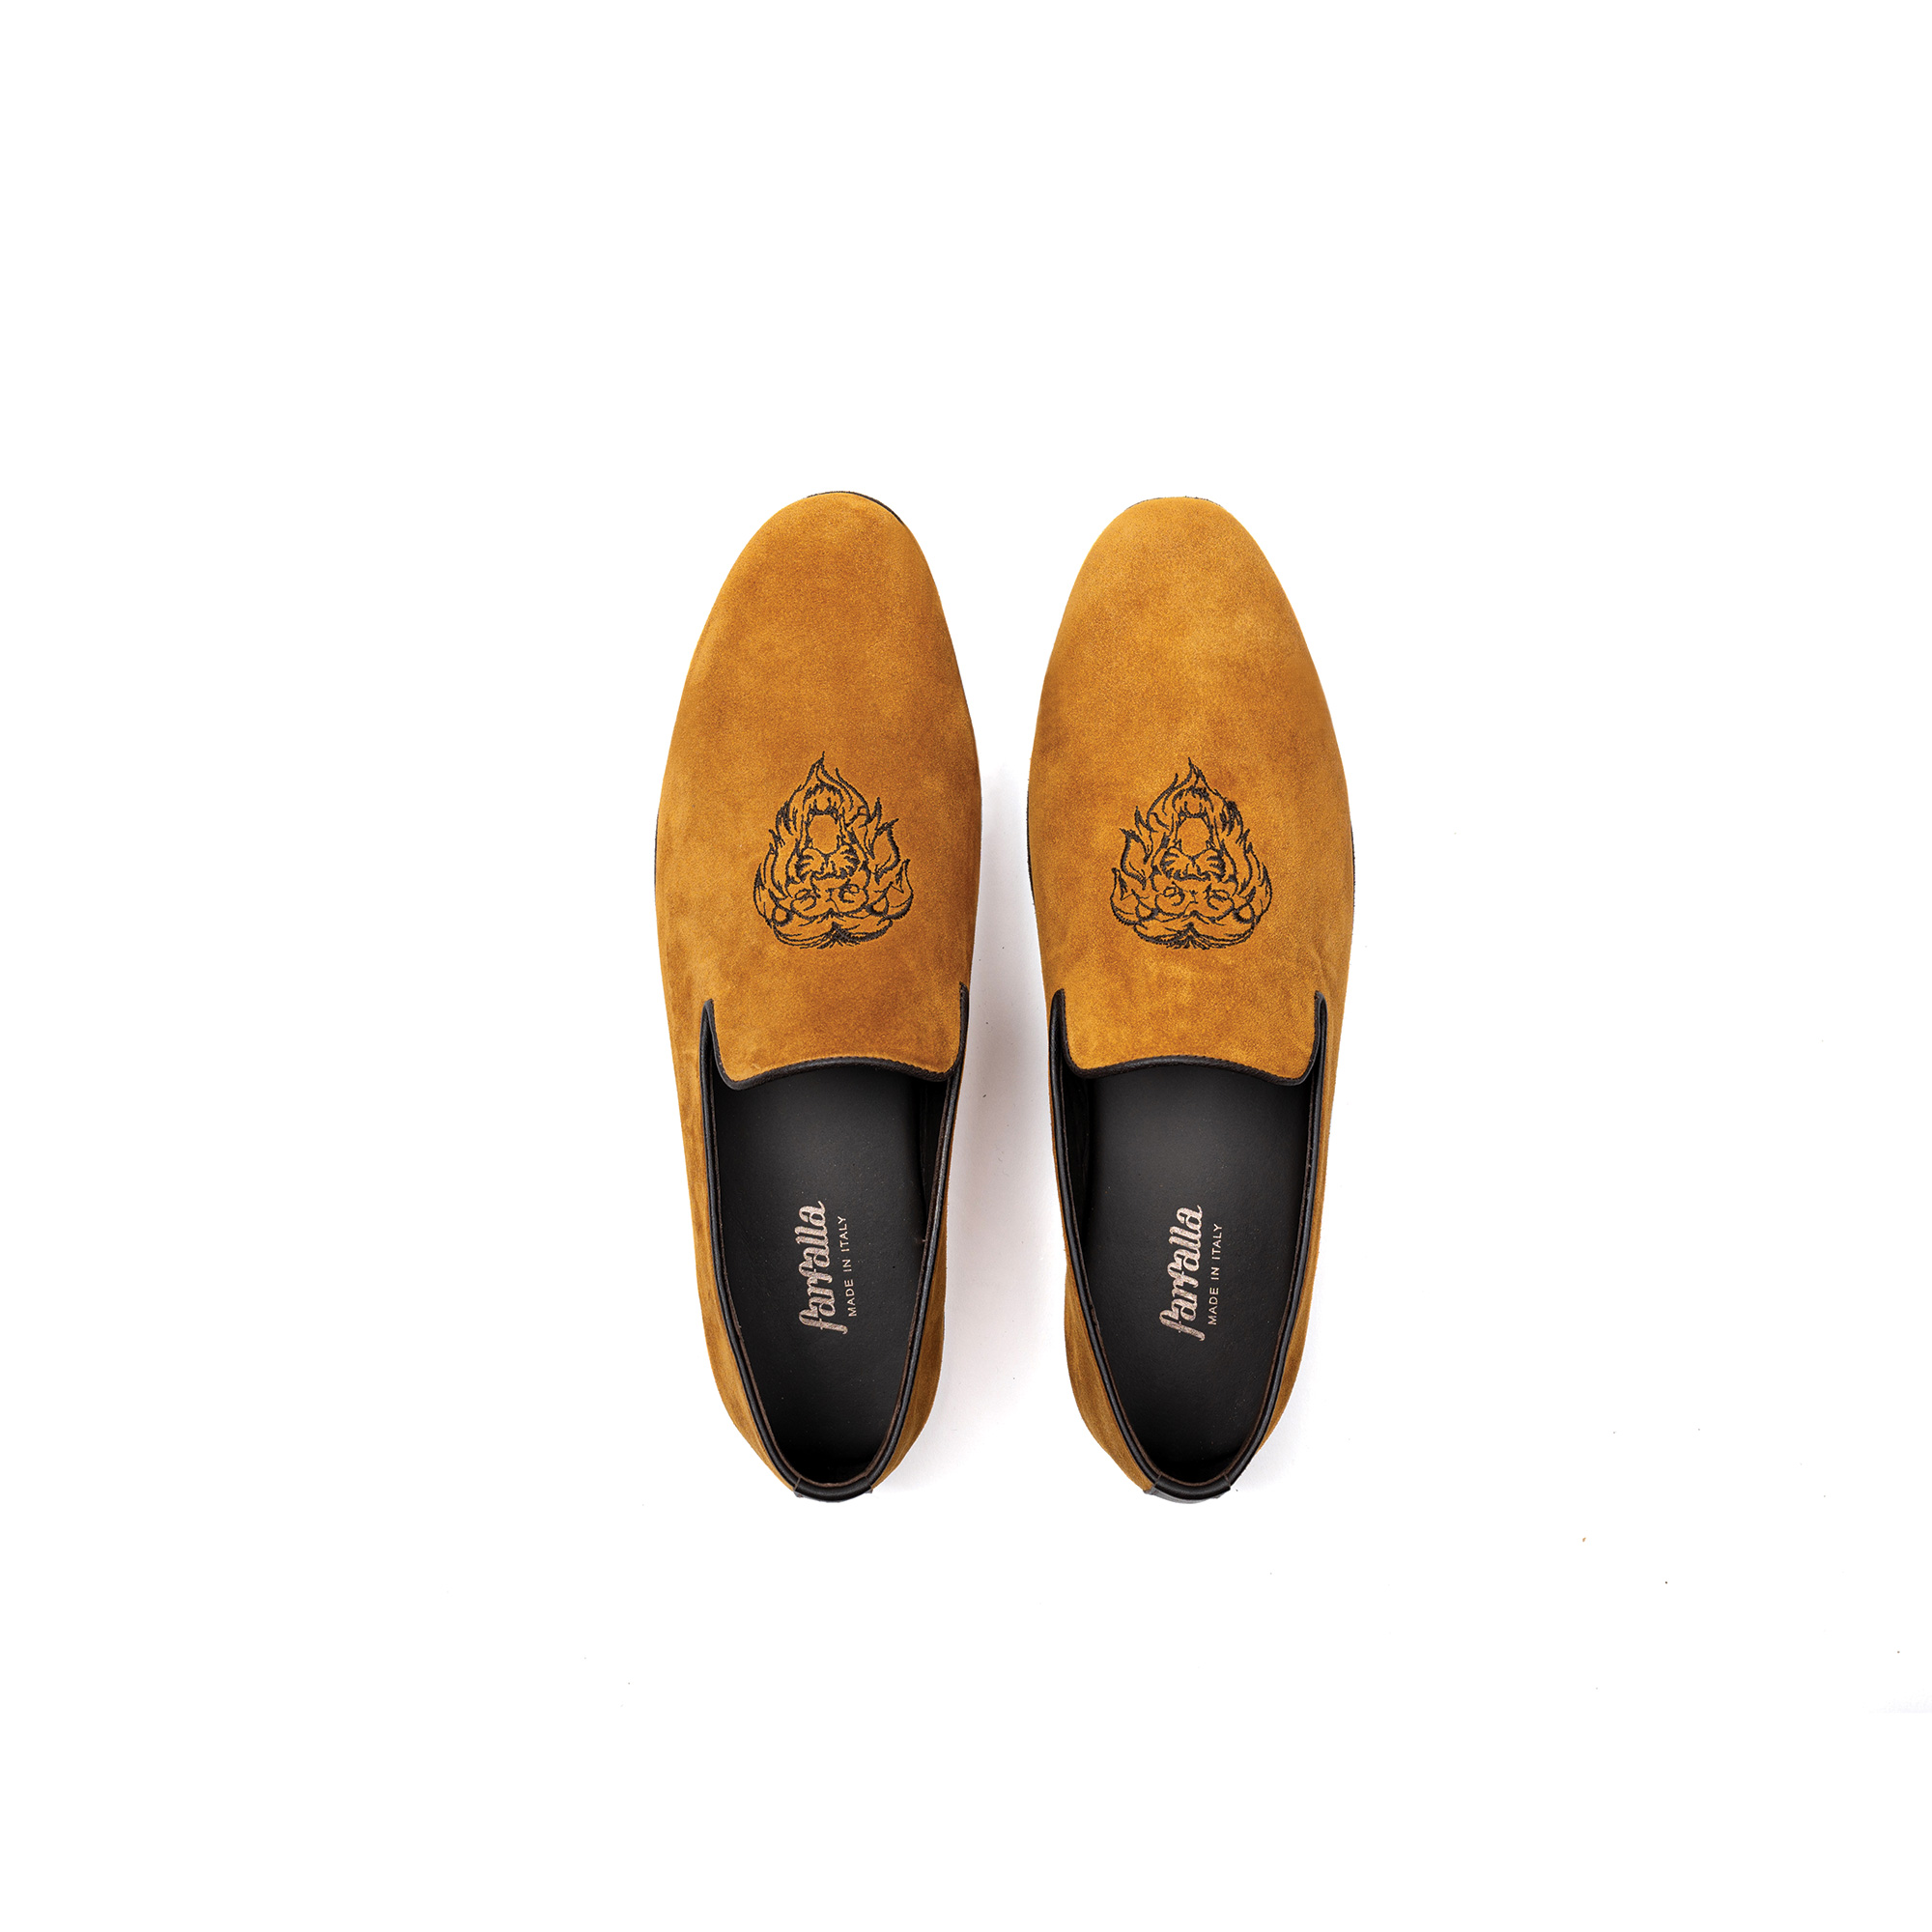 Pantofola interno classico in velour zafferano - Farfalla italian slippers